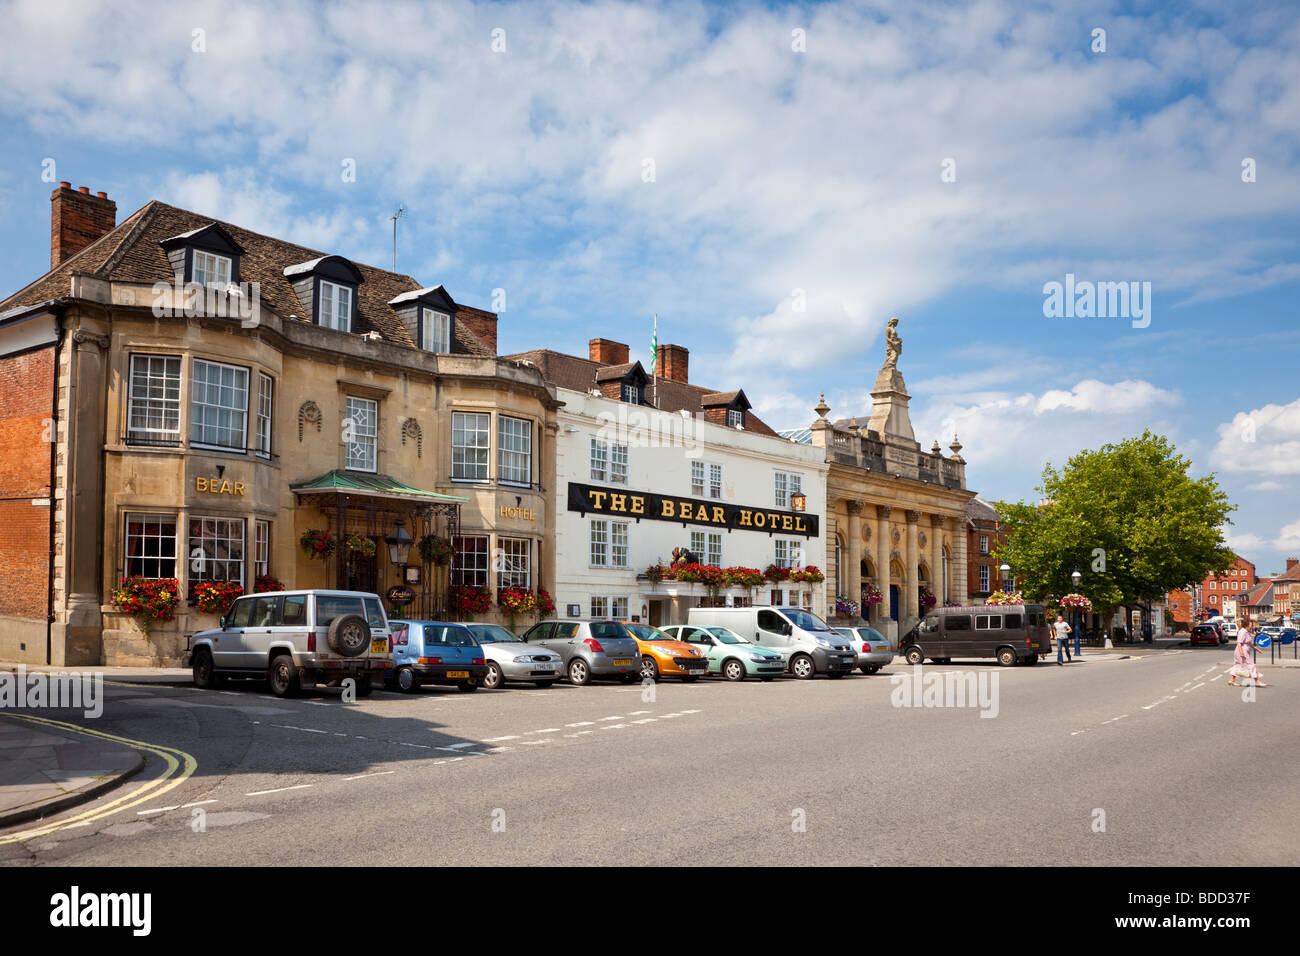 Devizes, Wiltshire, England, UK - The Bear Hotel und Corn Exchange Gebäude auf dem Marktplatz Stockfoto